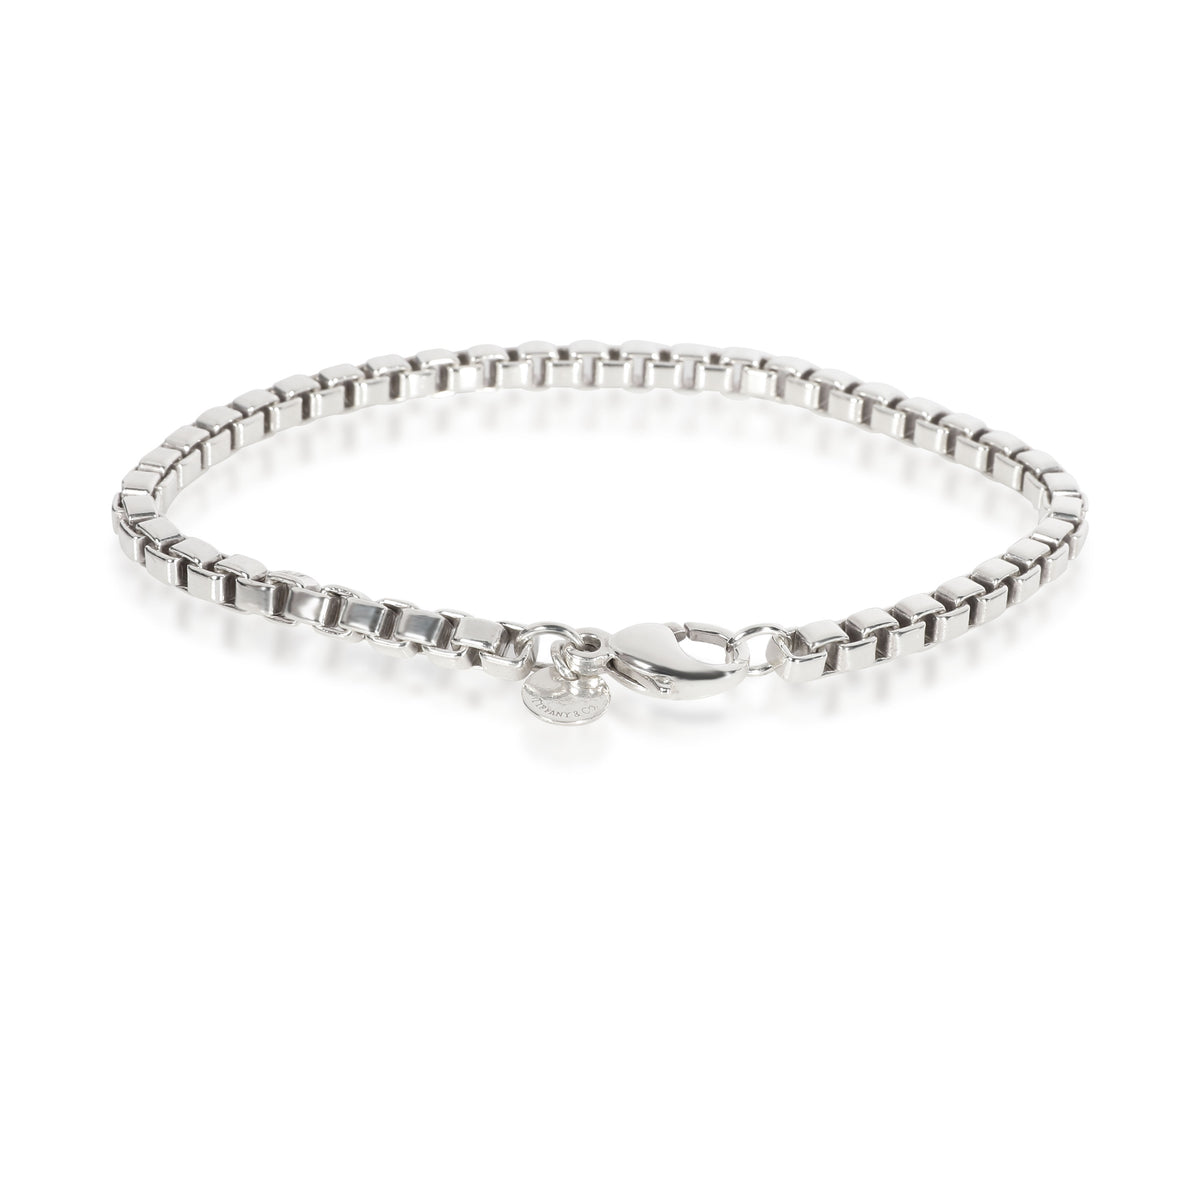 Tiffany & Co. Venetian Link Bracelet in Sterling Silver